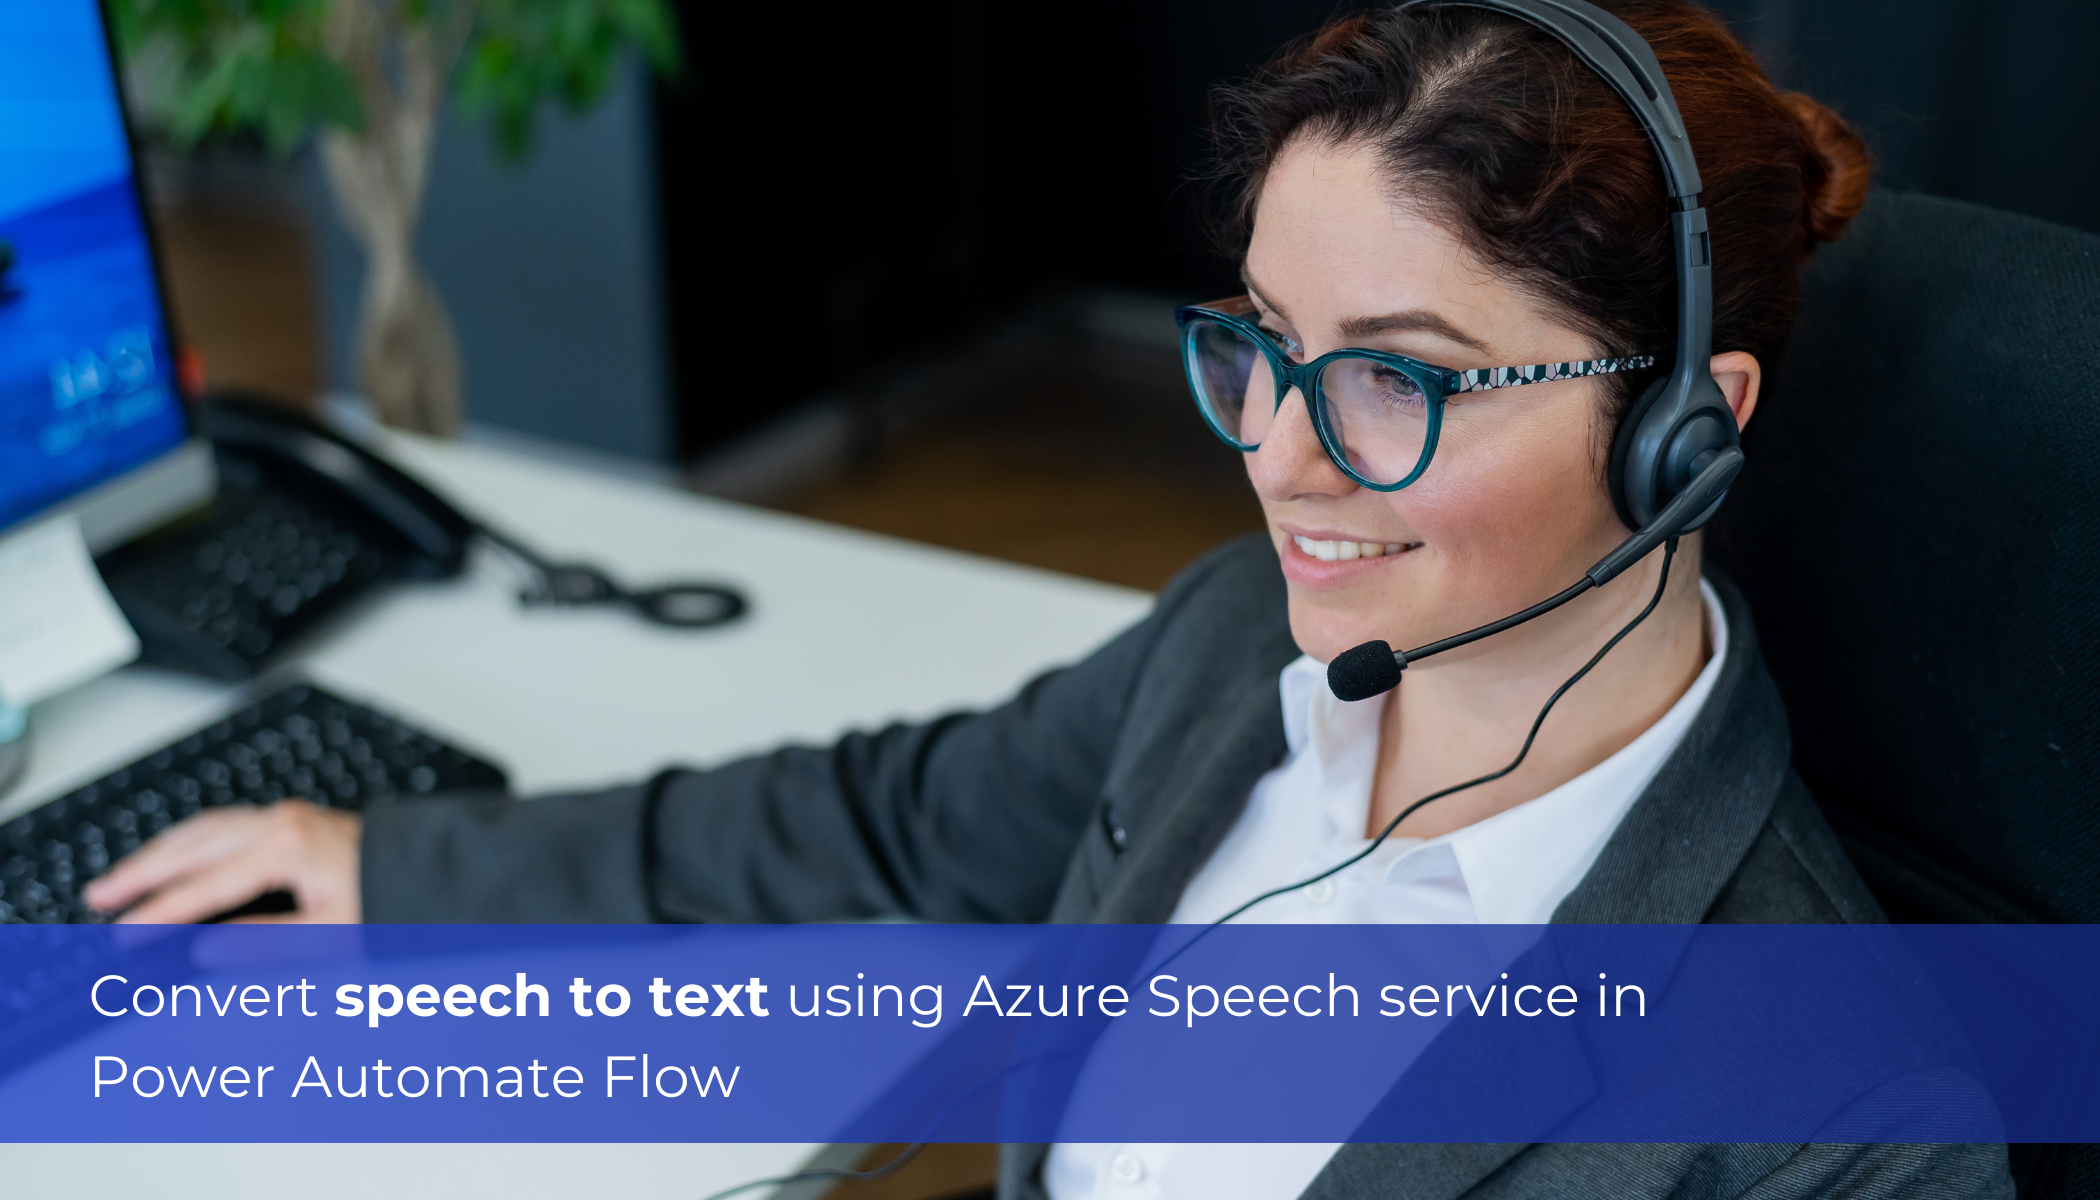 Convert speech to text using Azure Speech service in Power Automate Flow